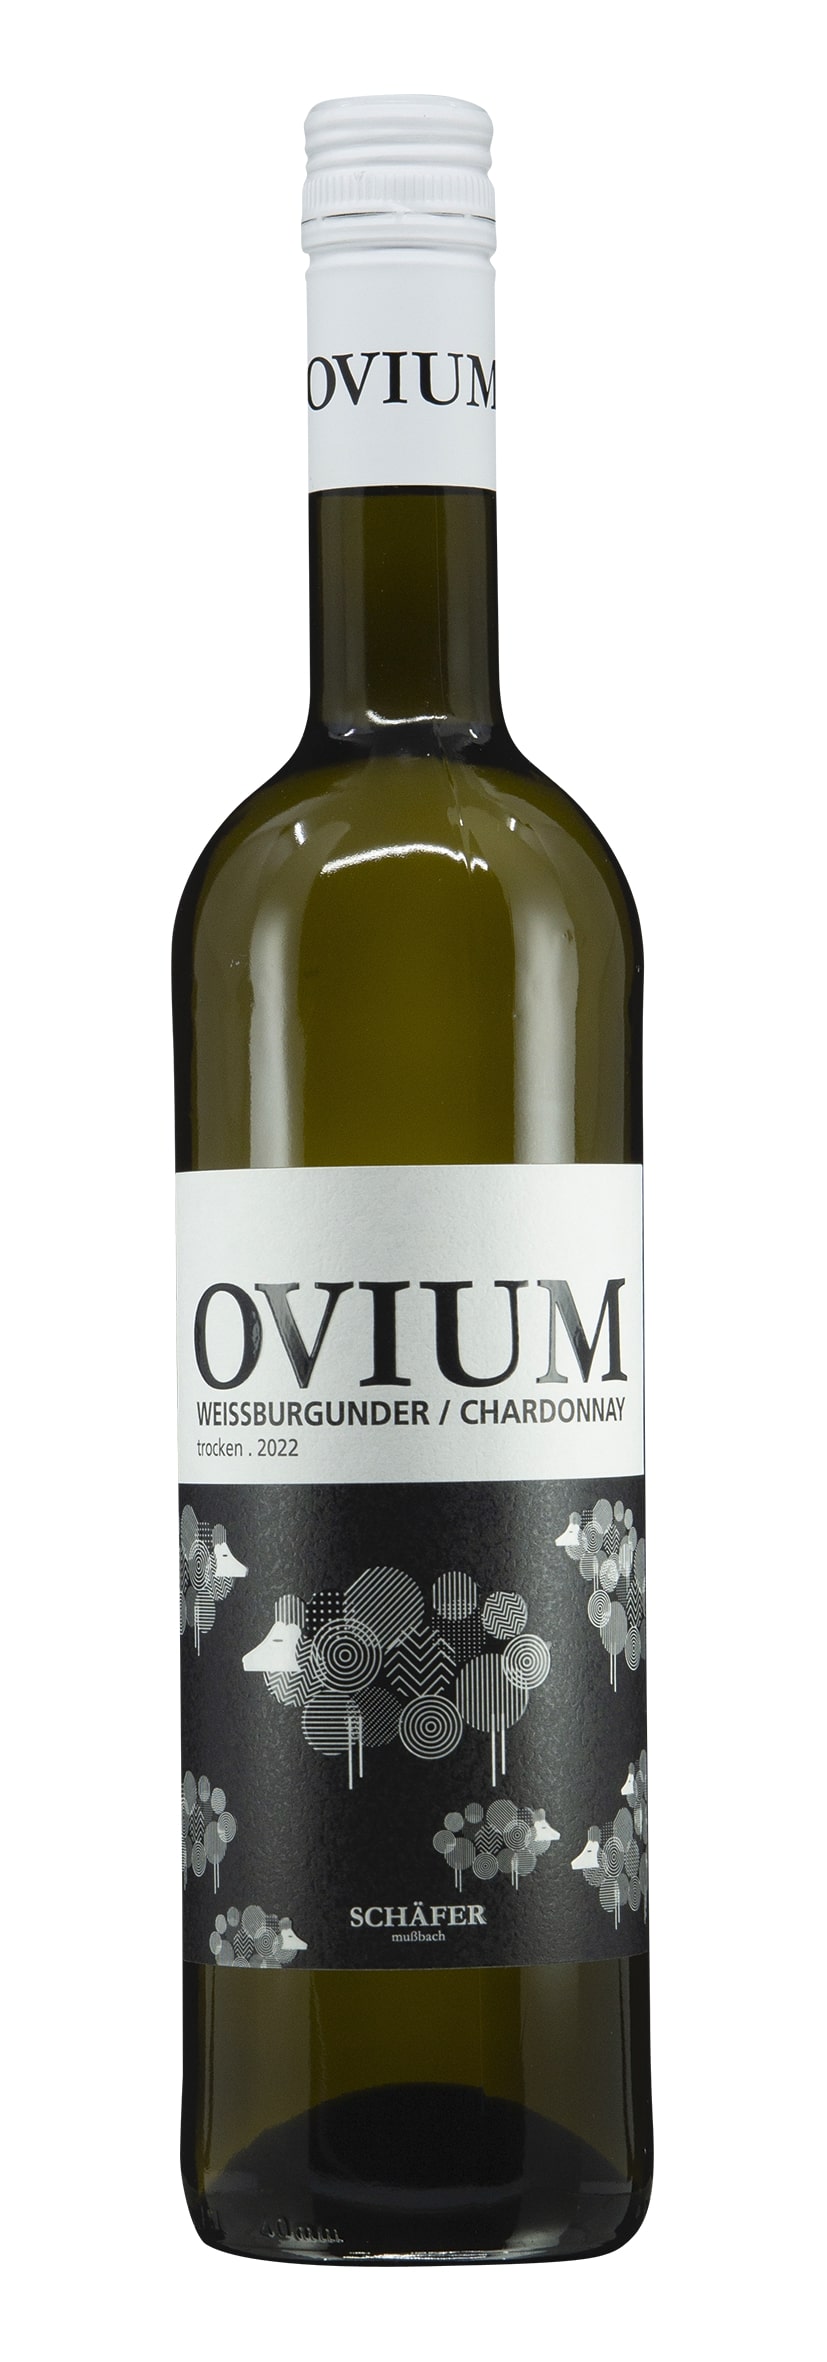 Pfalz Weissburgunder / Chardonnay Ovium 2022